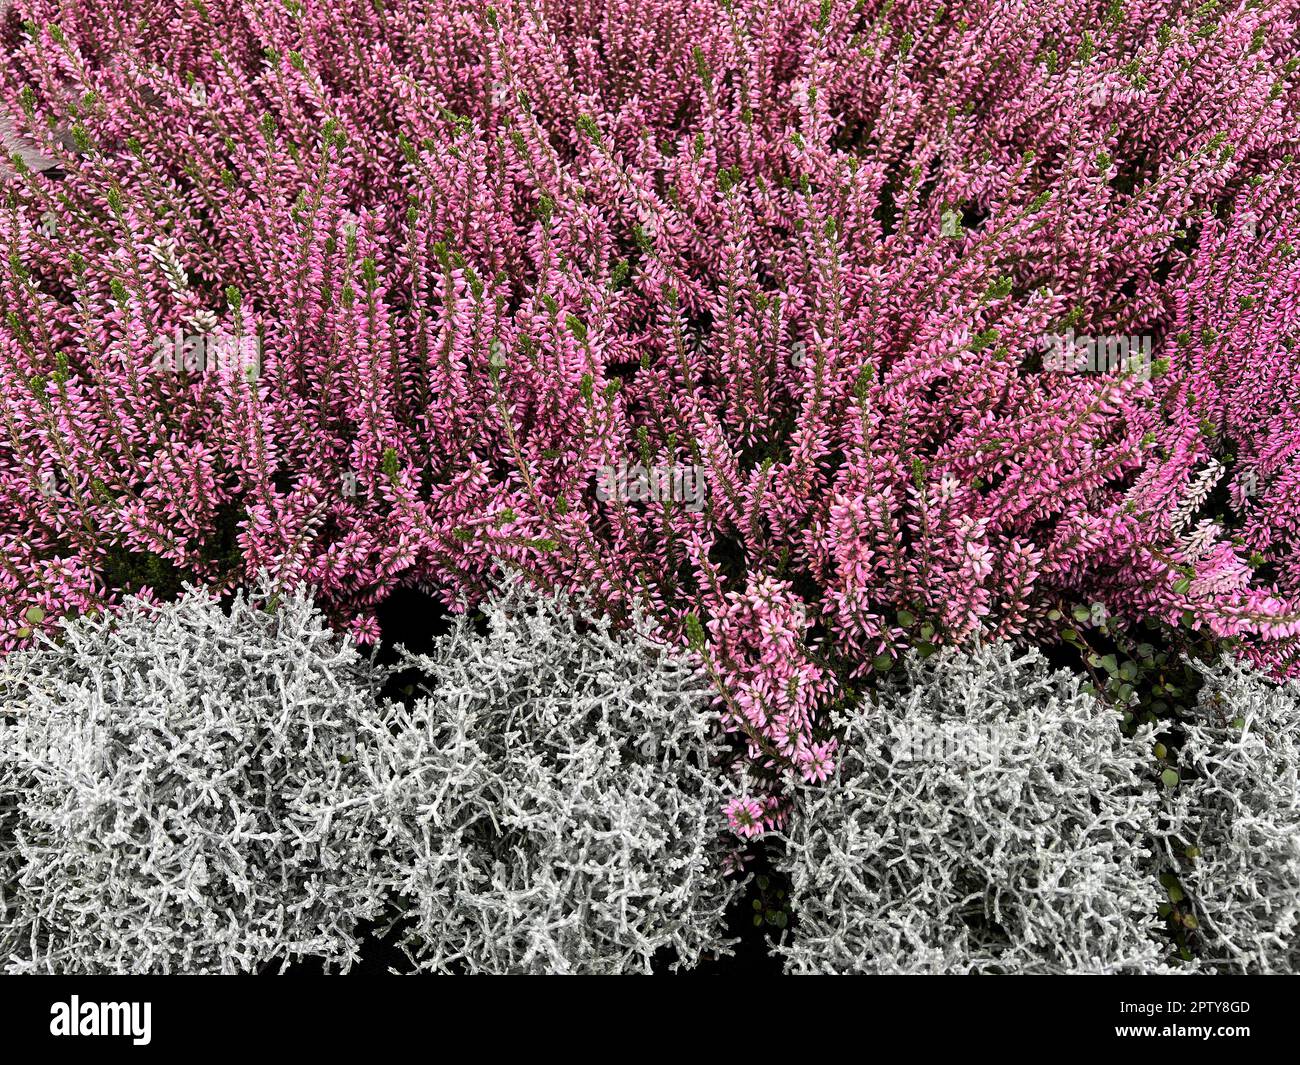 Besenheide, Calluna vulgaris, auch Heidekraut genannt, ist die einzige Art der monotypischen Pflanzengattung Calluna, die zur Familie der Heidekrautge Stock Photo